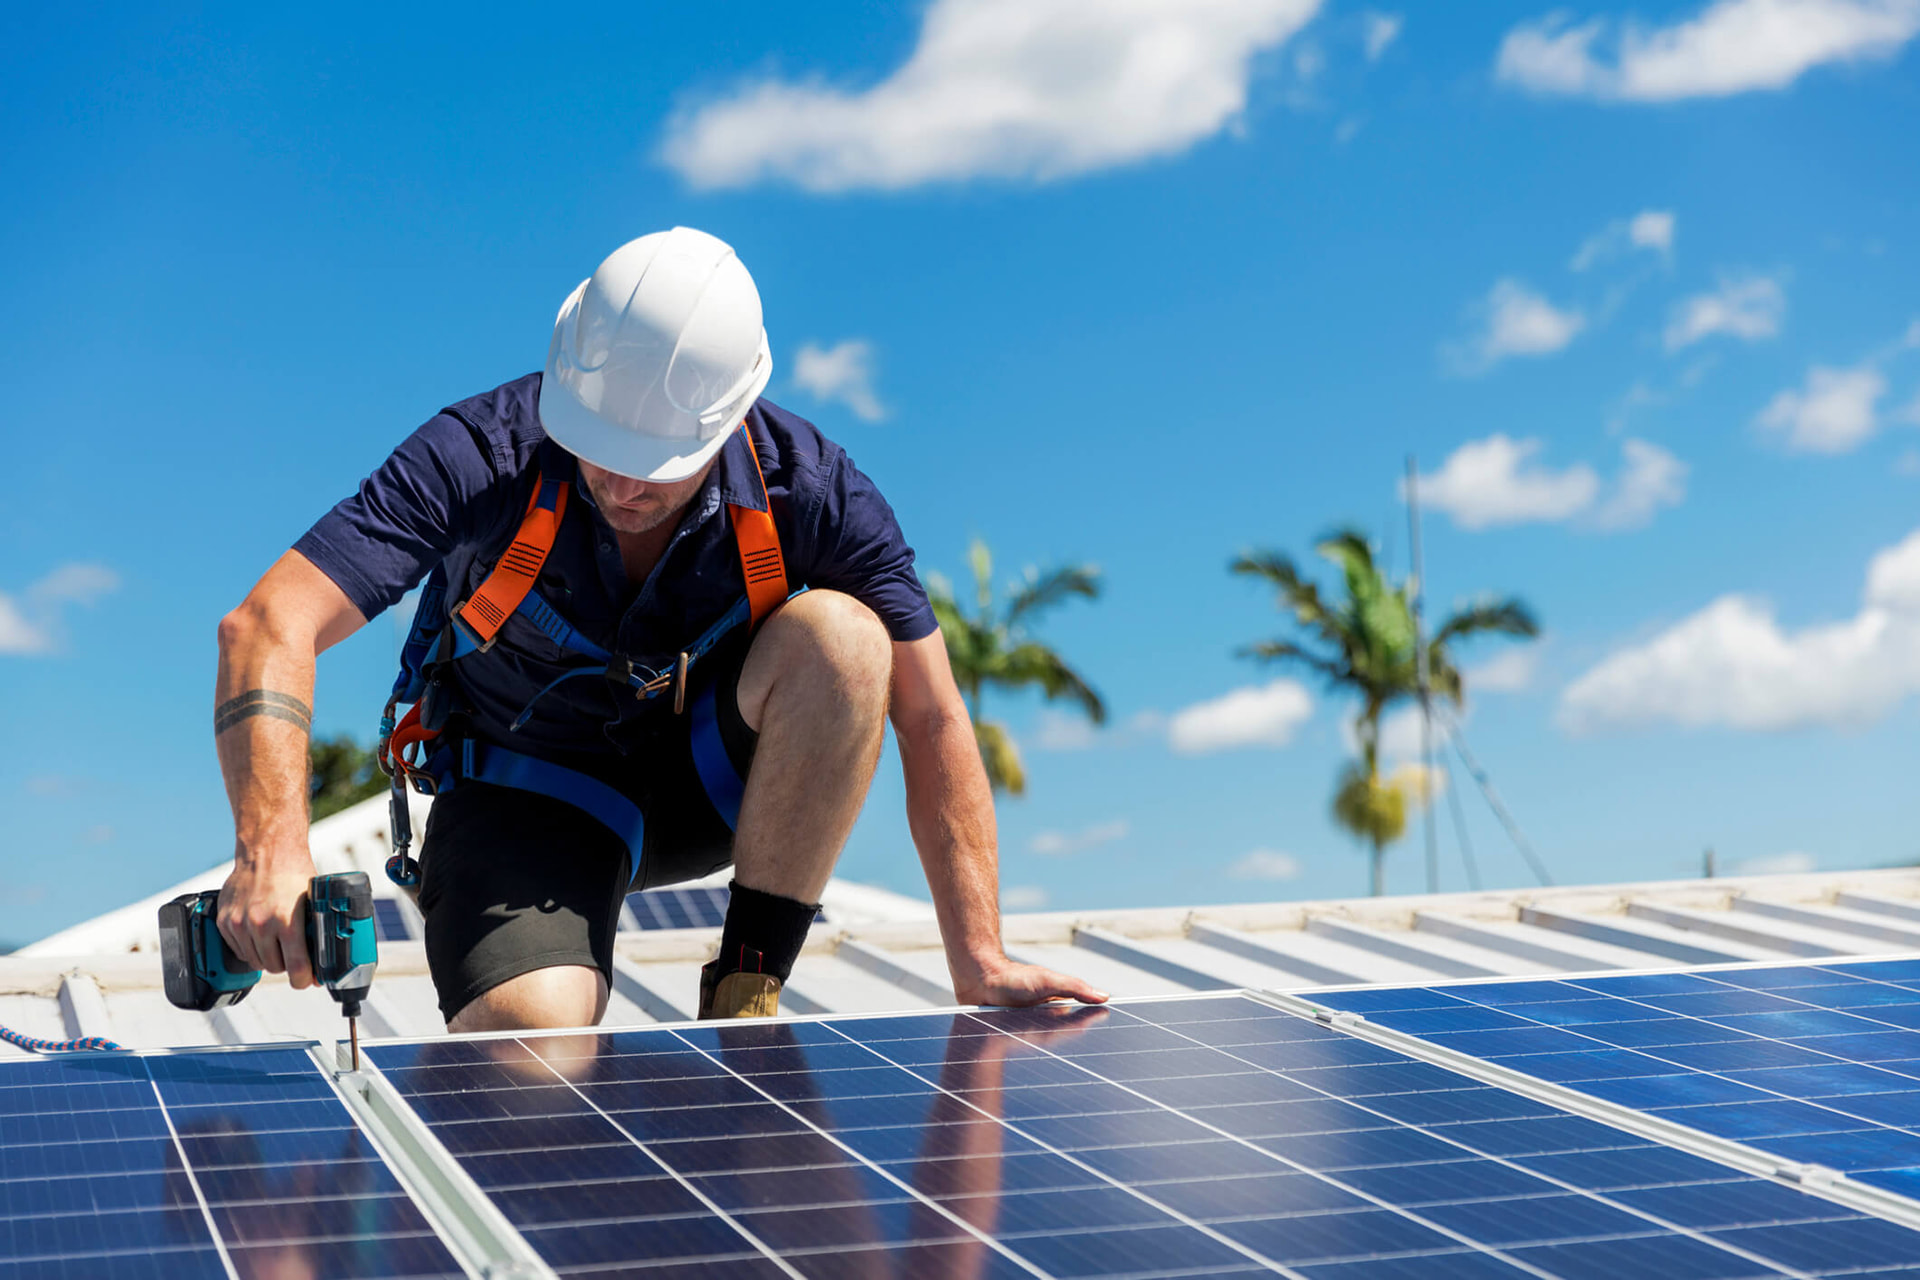 Nhà nước cần sớm đưa ra bộ tiêu chuẩn kỹ thuật về các sản phẩm pin mặt trời cũng như ban hành những quy định để quản lý, giám sát hệ thống điện mặt trời mái nhà